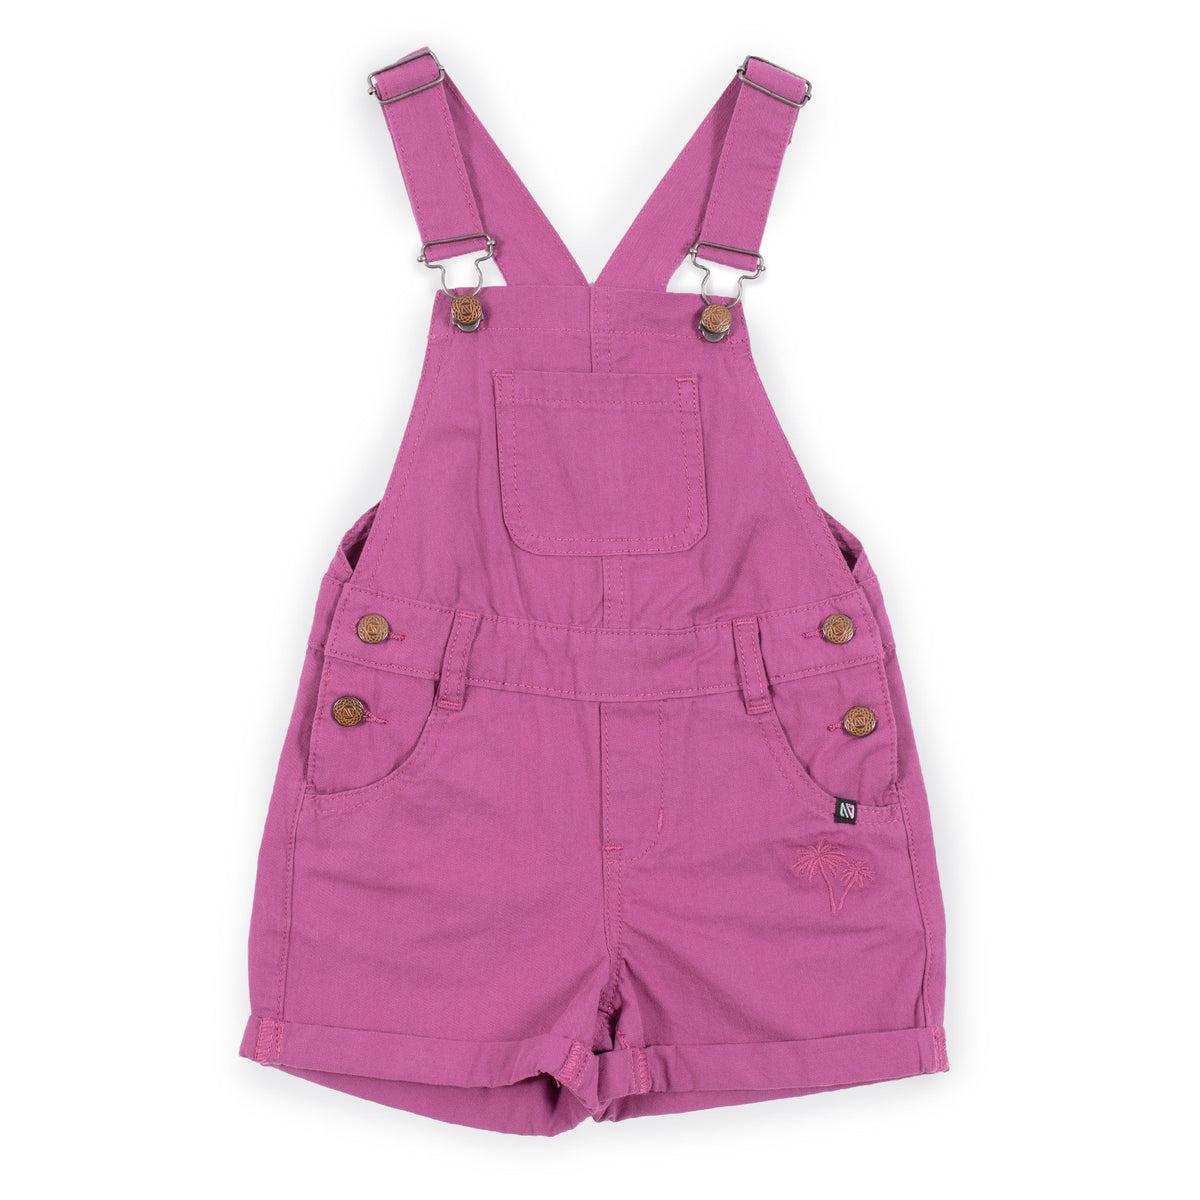 Salopette courte pour enfant fille par Nano | S2302-09 Fuchsia | Boutique Flos, vêtements mode pour bébés et enfants